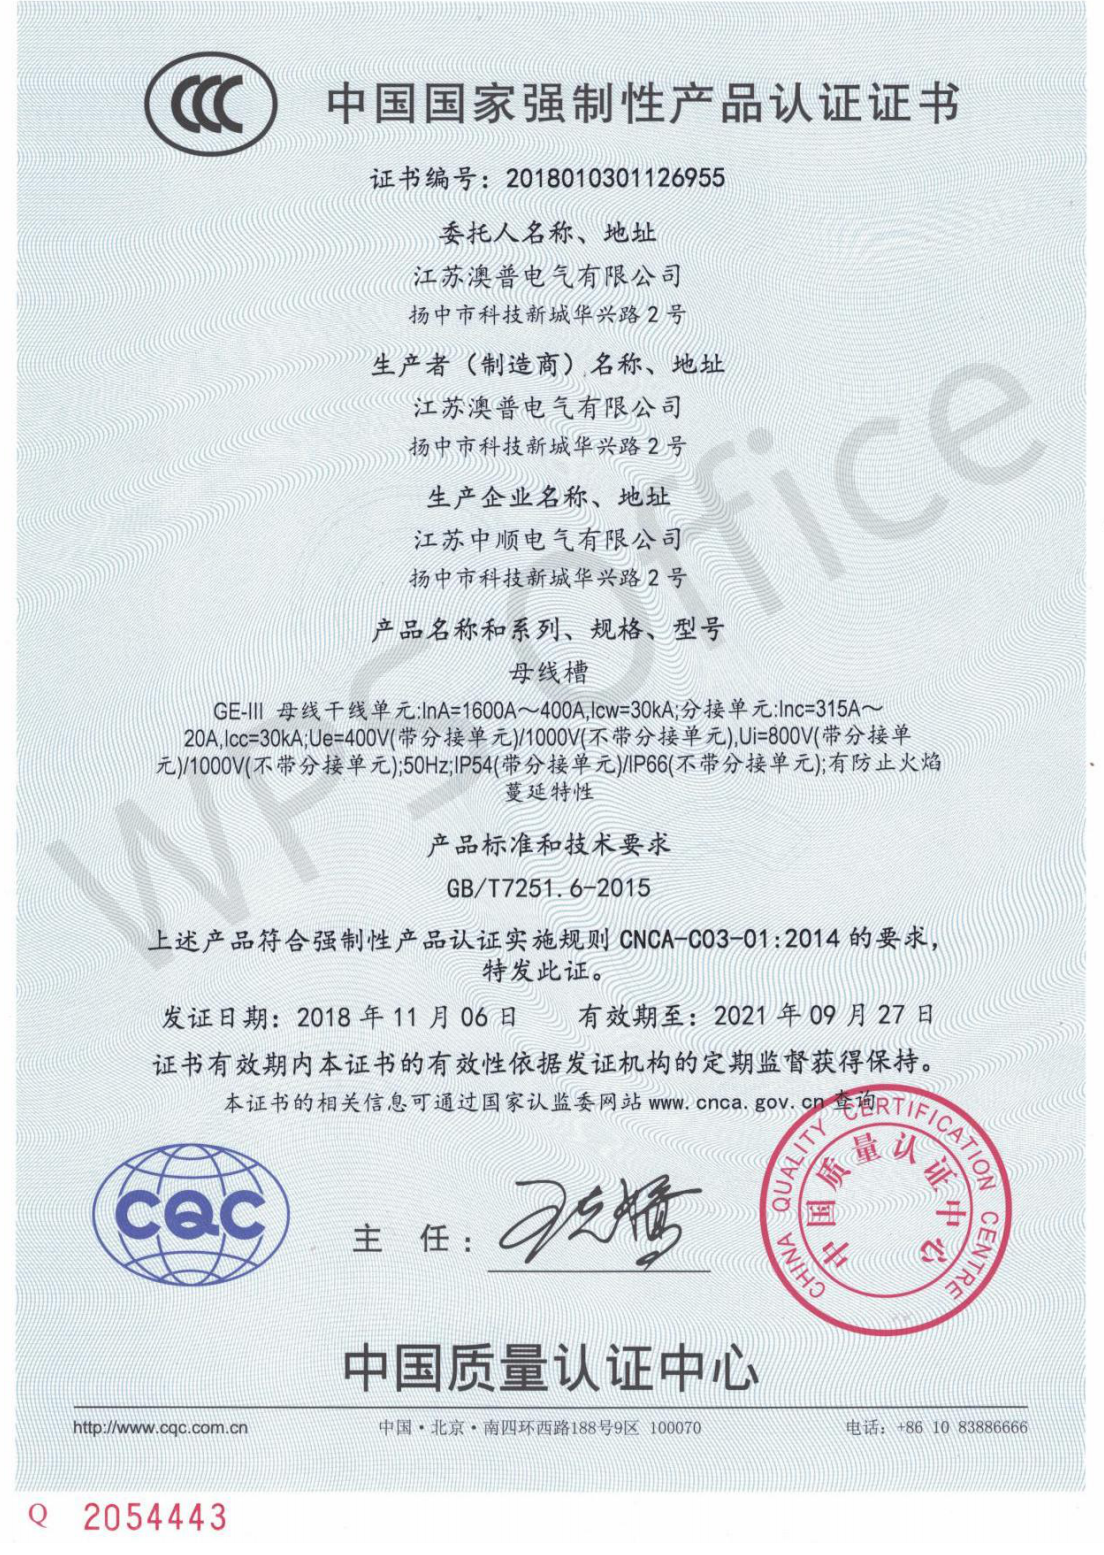 400-1600A母线3C认证证书-CN